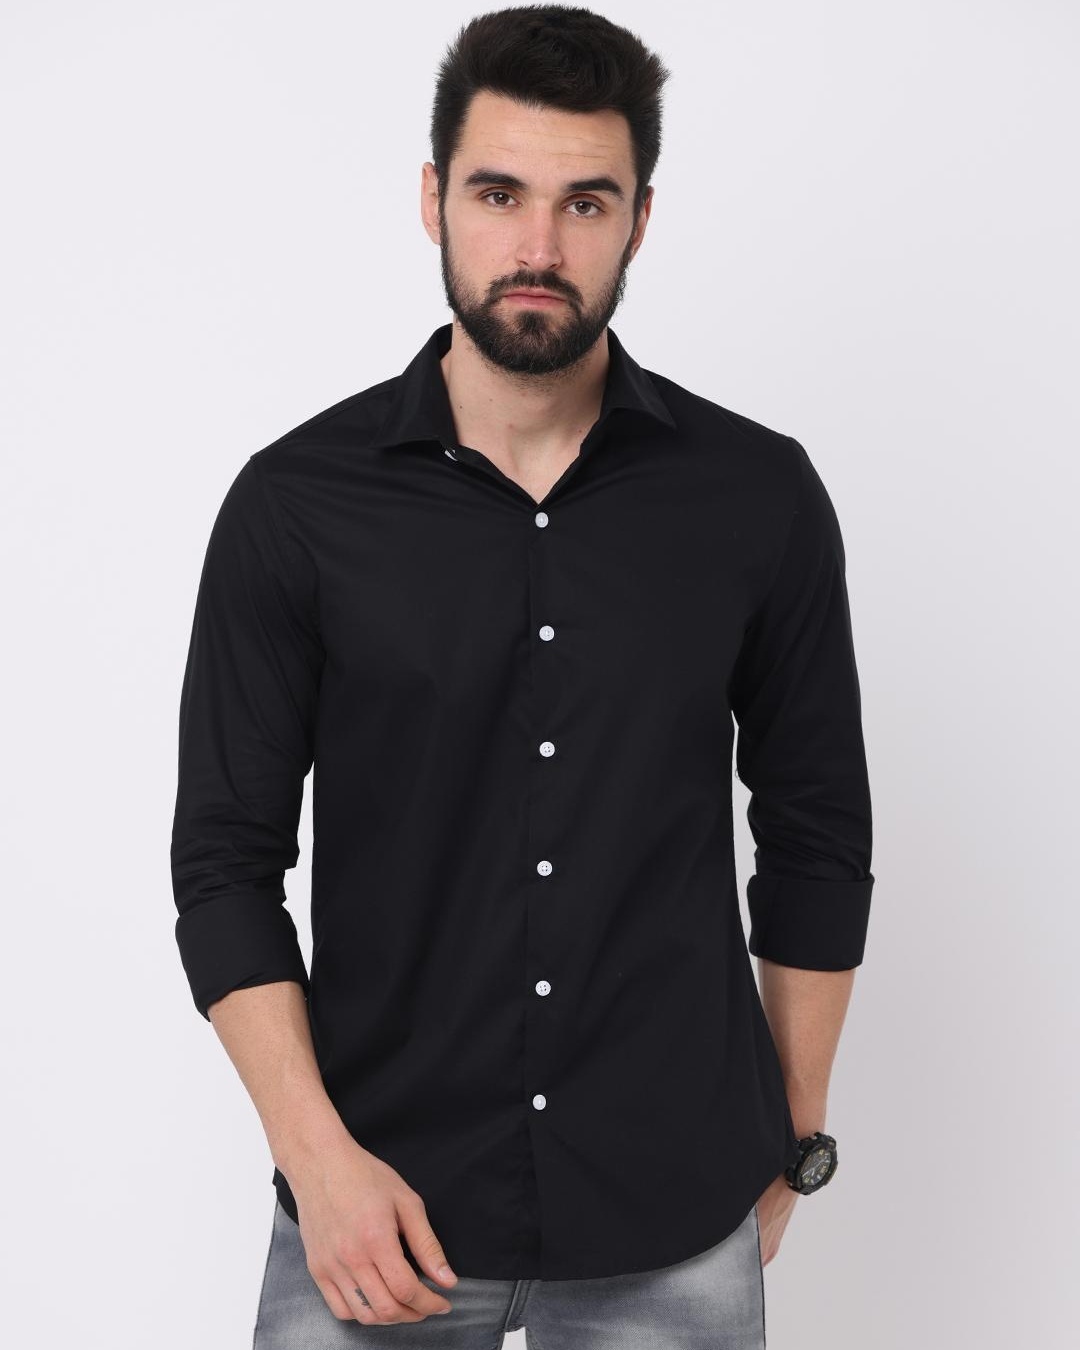 Buy Men's Black Slim Fit Shirt Online at Bewakoof